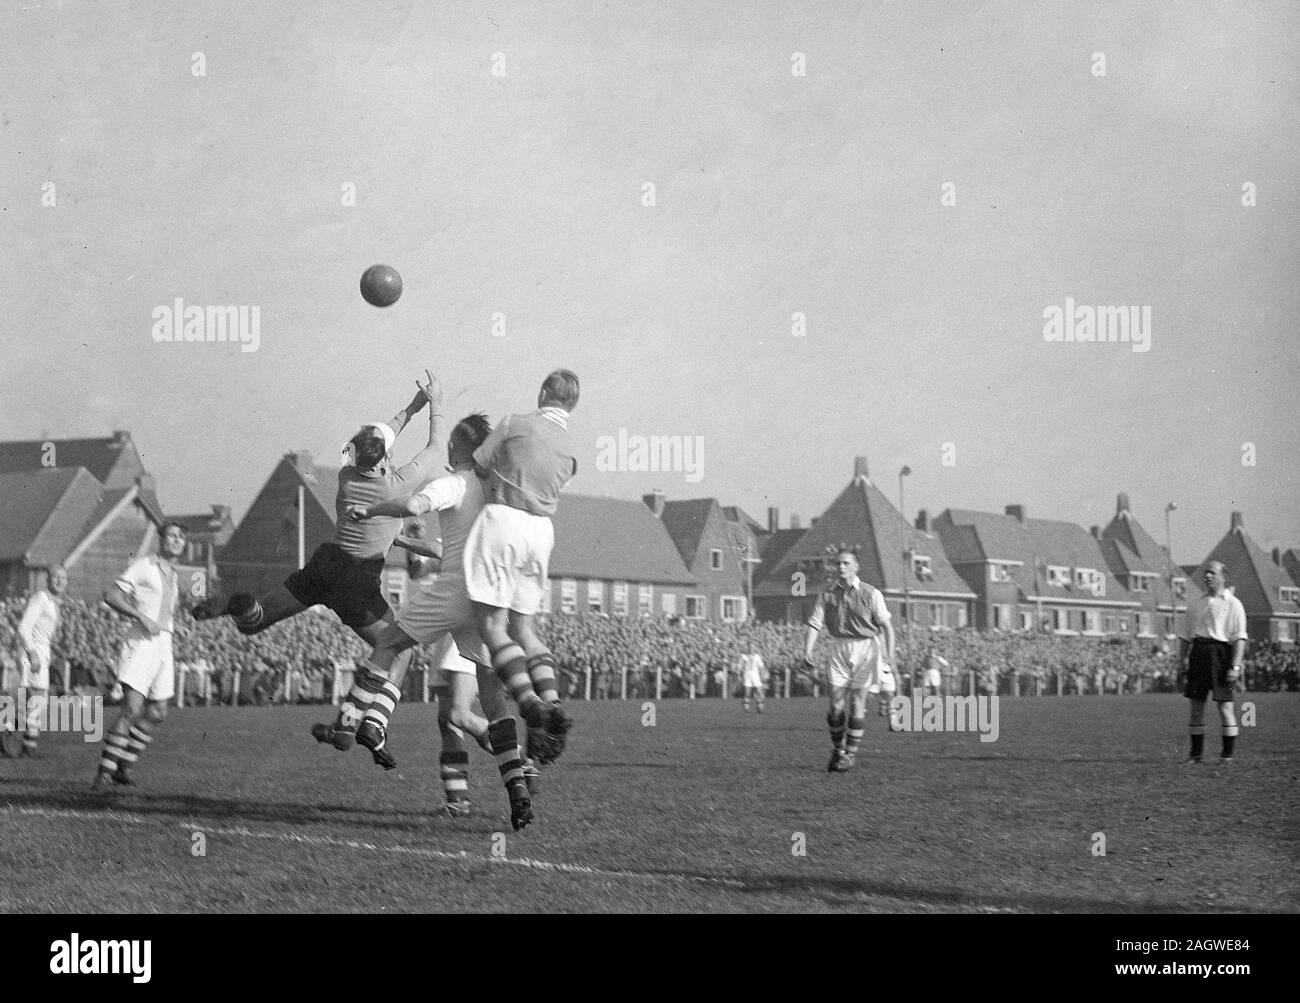 10 octobre 1947 - Men's match de soccer, balle dans l'air avant l'objectif d'être marqué. Peut-être un jeu joué en Hollande. Banque D'Images